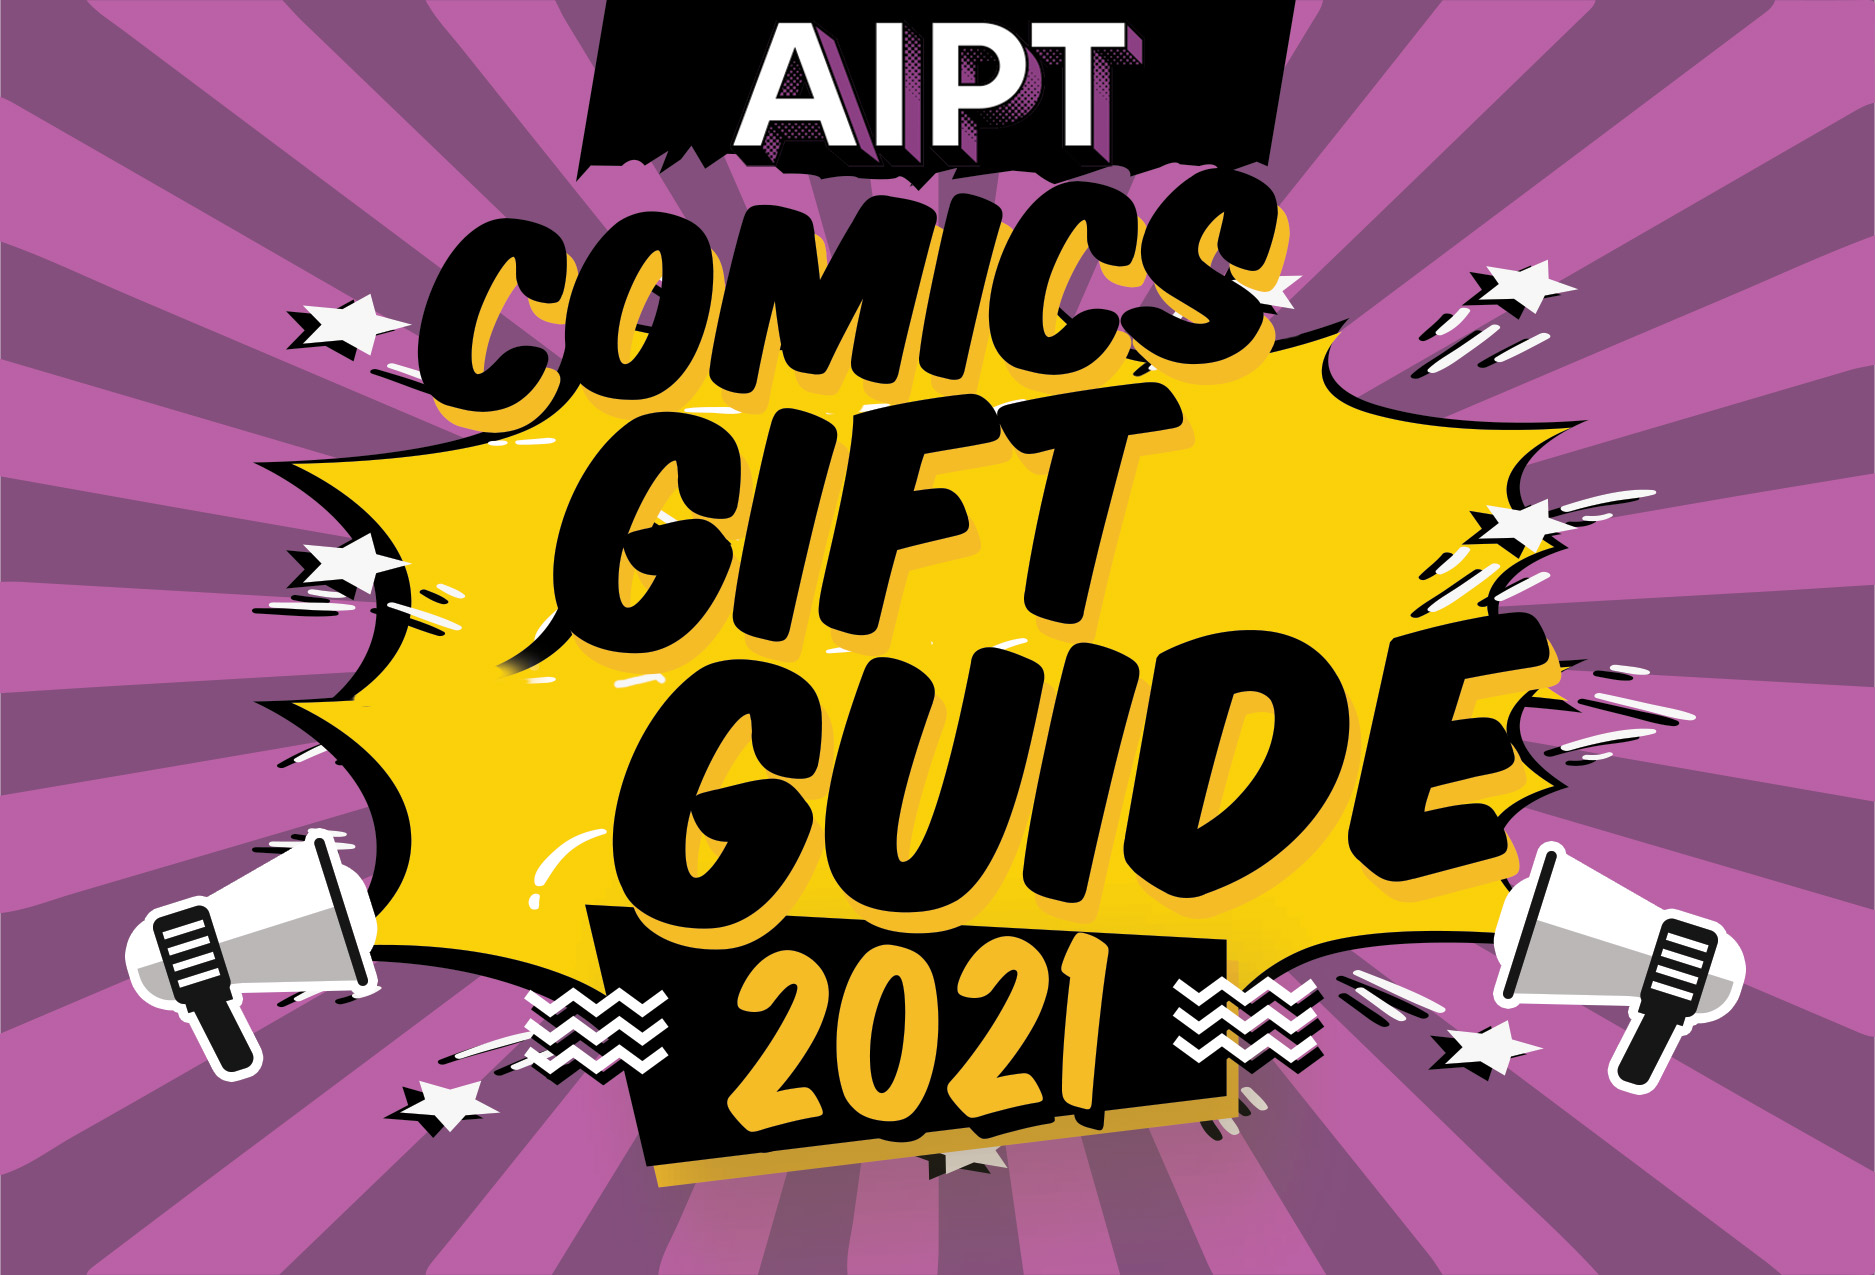 AIPT 2021 Comics Gift Guide: Saga, Daredevil, X-Men, and more